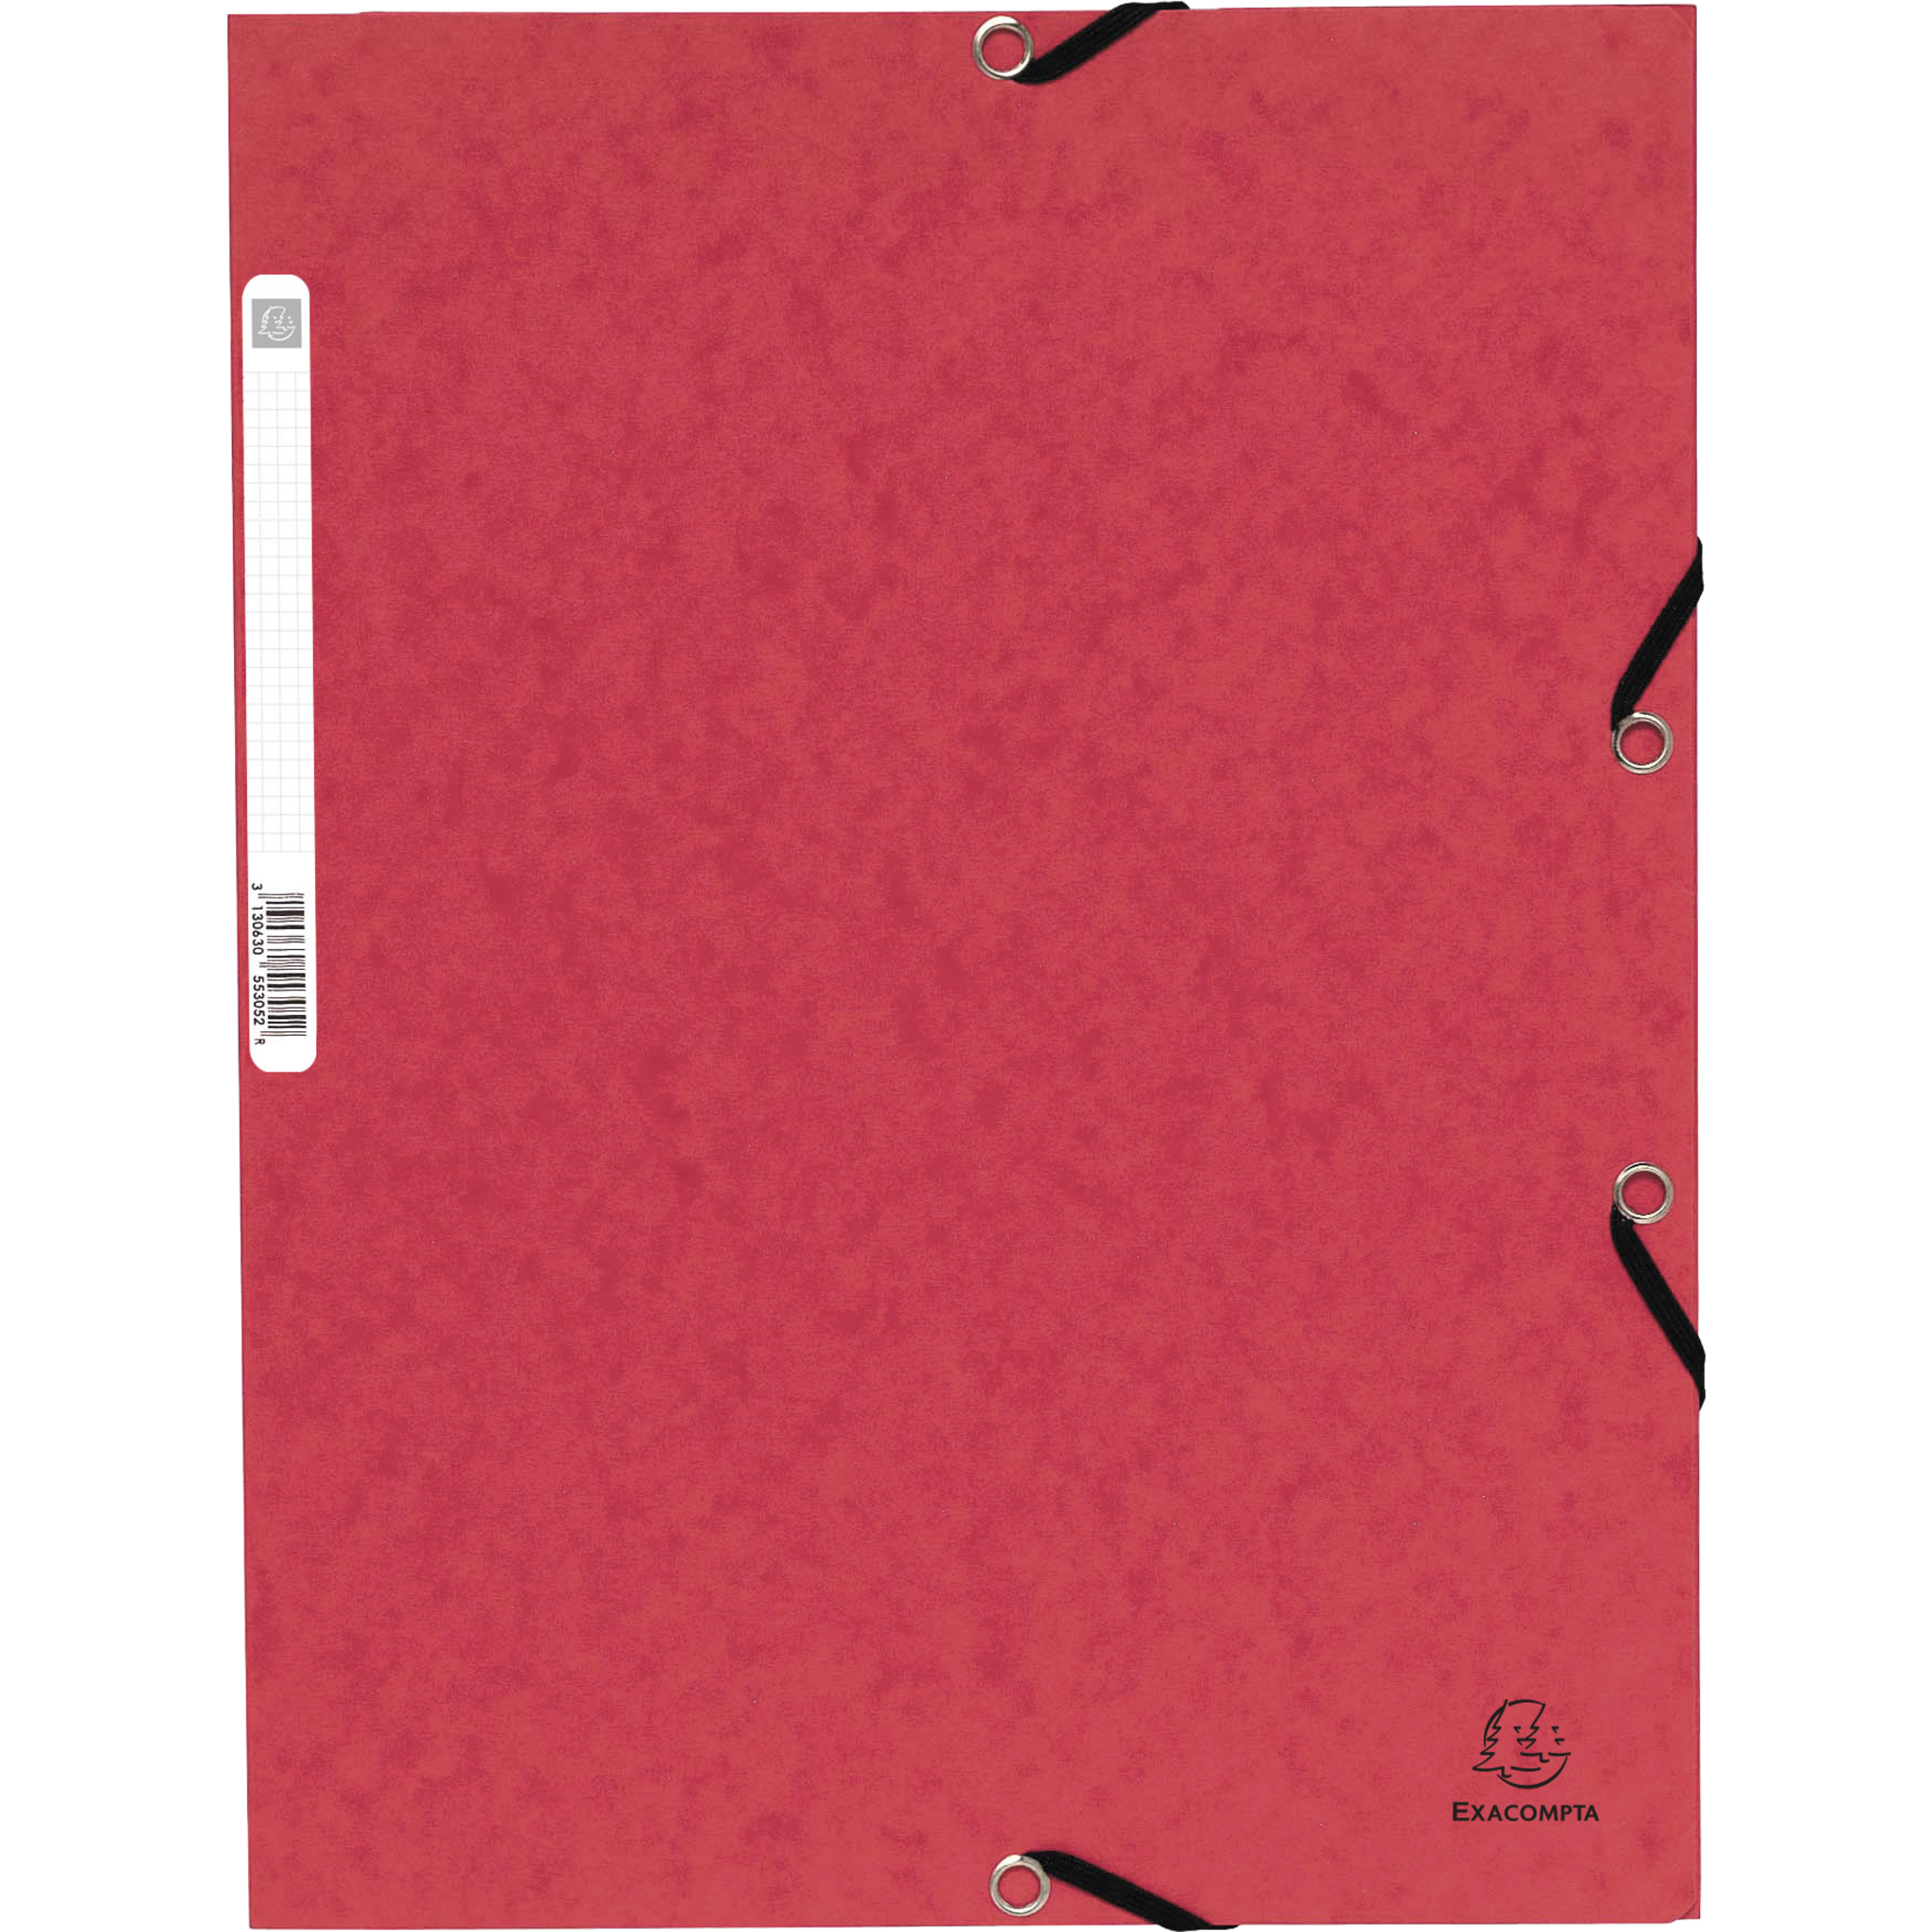 EXACOMPTA Sammelmappe mit Gummizug und 3 Klappen aus Colorspan-Karton 355g/qm, für Format DIN A4 - Rot